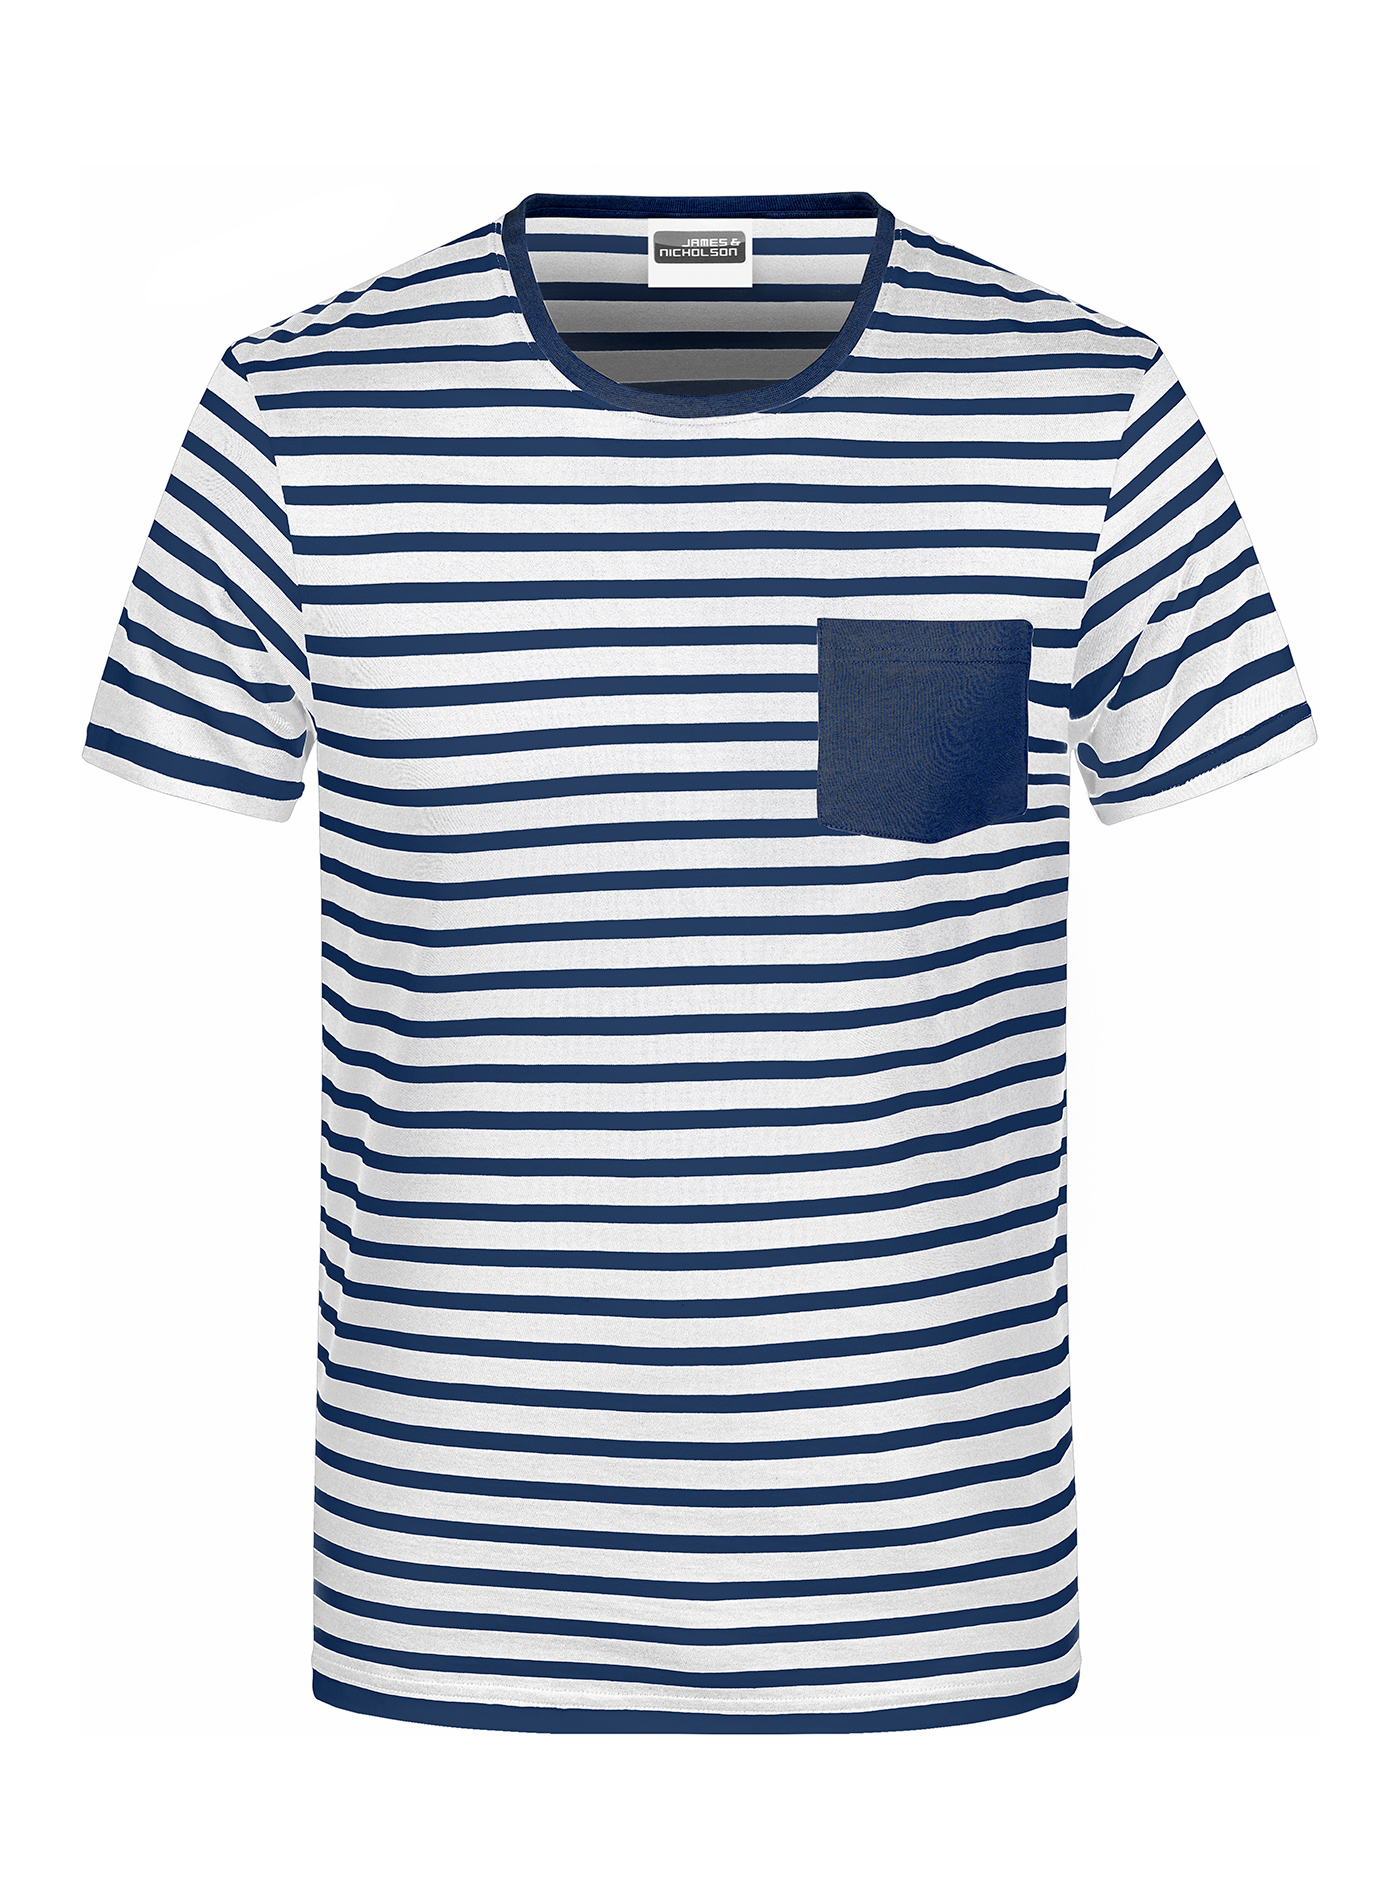 Pánské pruhované tričko James & Nicholson - Bílá a temně modrá XXL